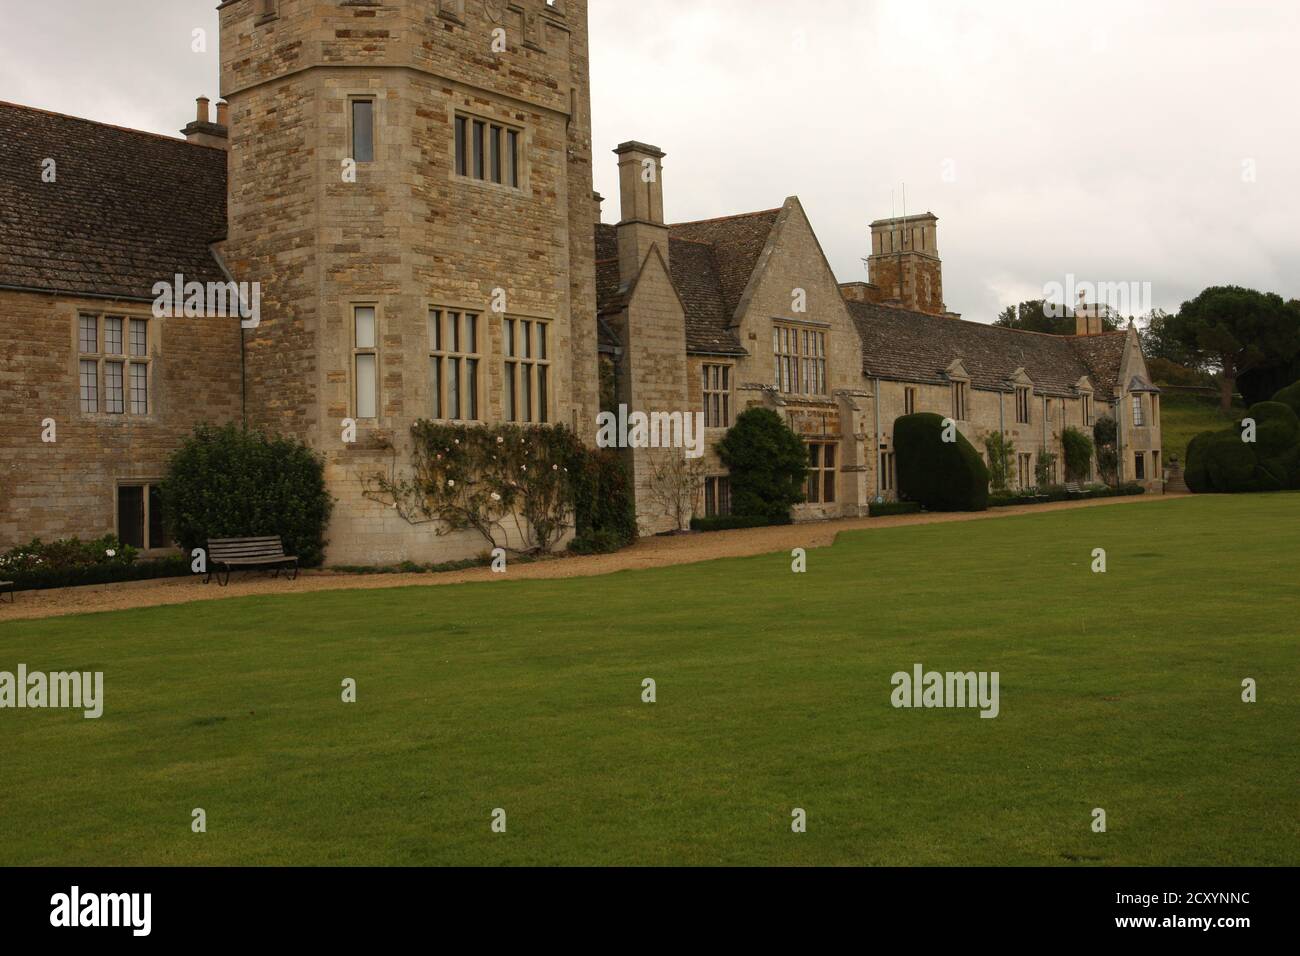 Manor house of Rockingham Castle, England, UK Stock Photo